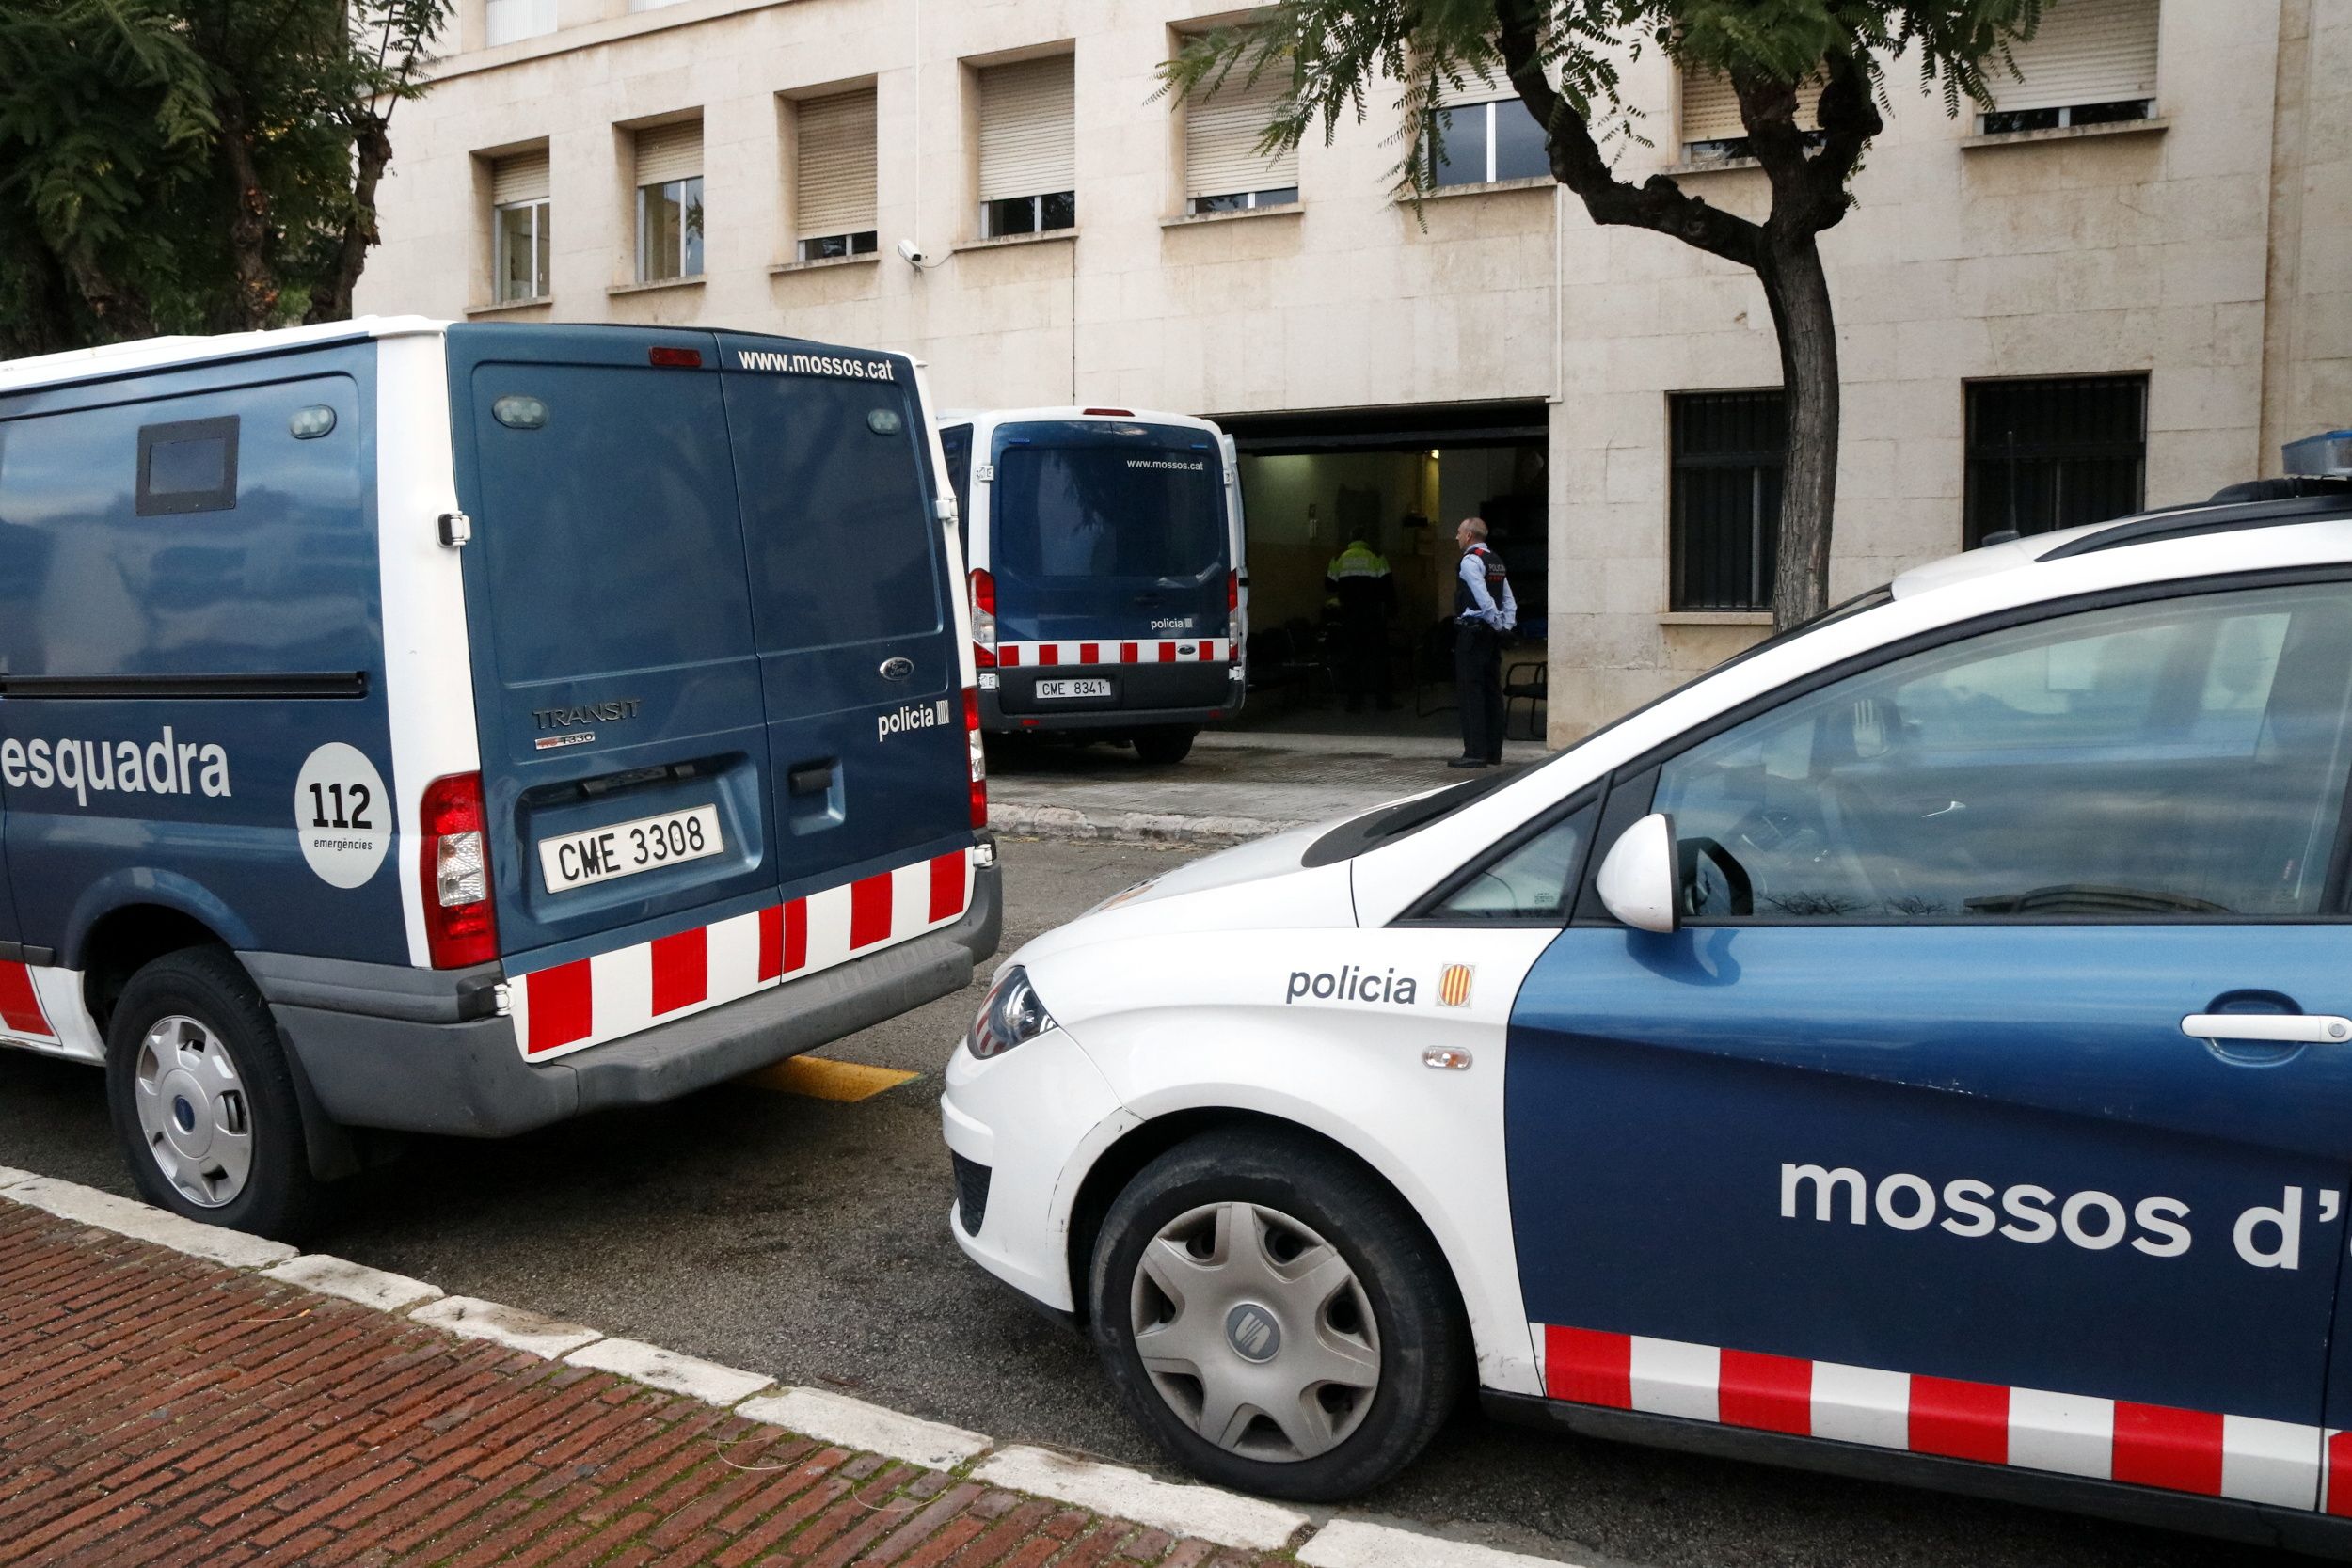 Tres detinguts per set robatoris en domicilis d'Abrera, Castelldefels i Cardedeu